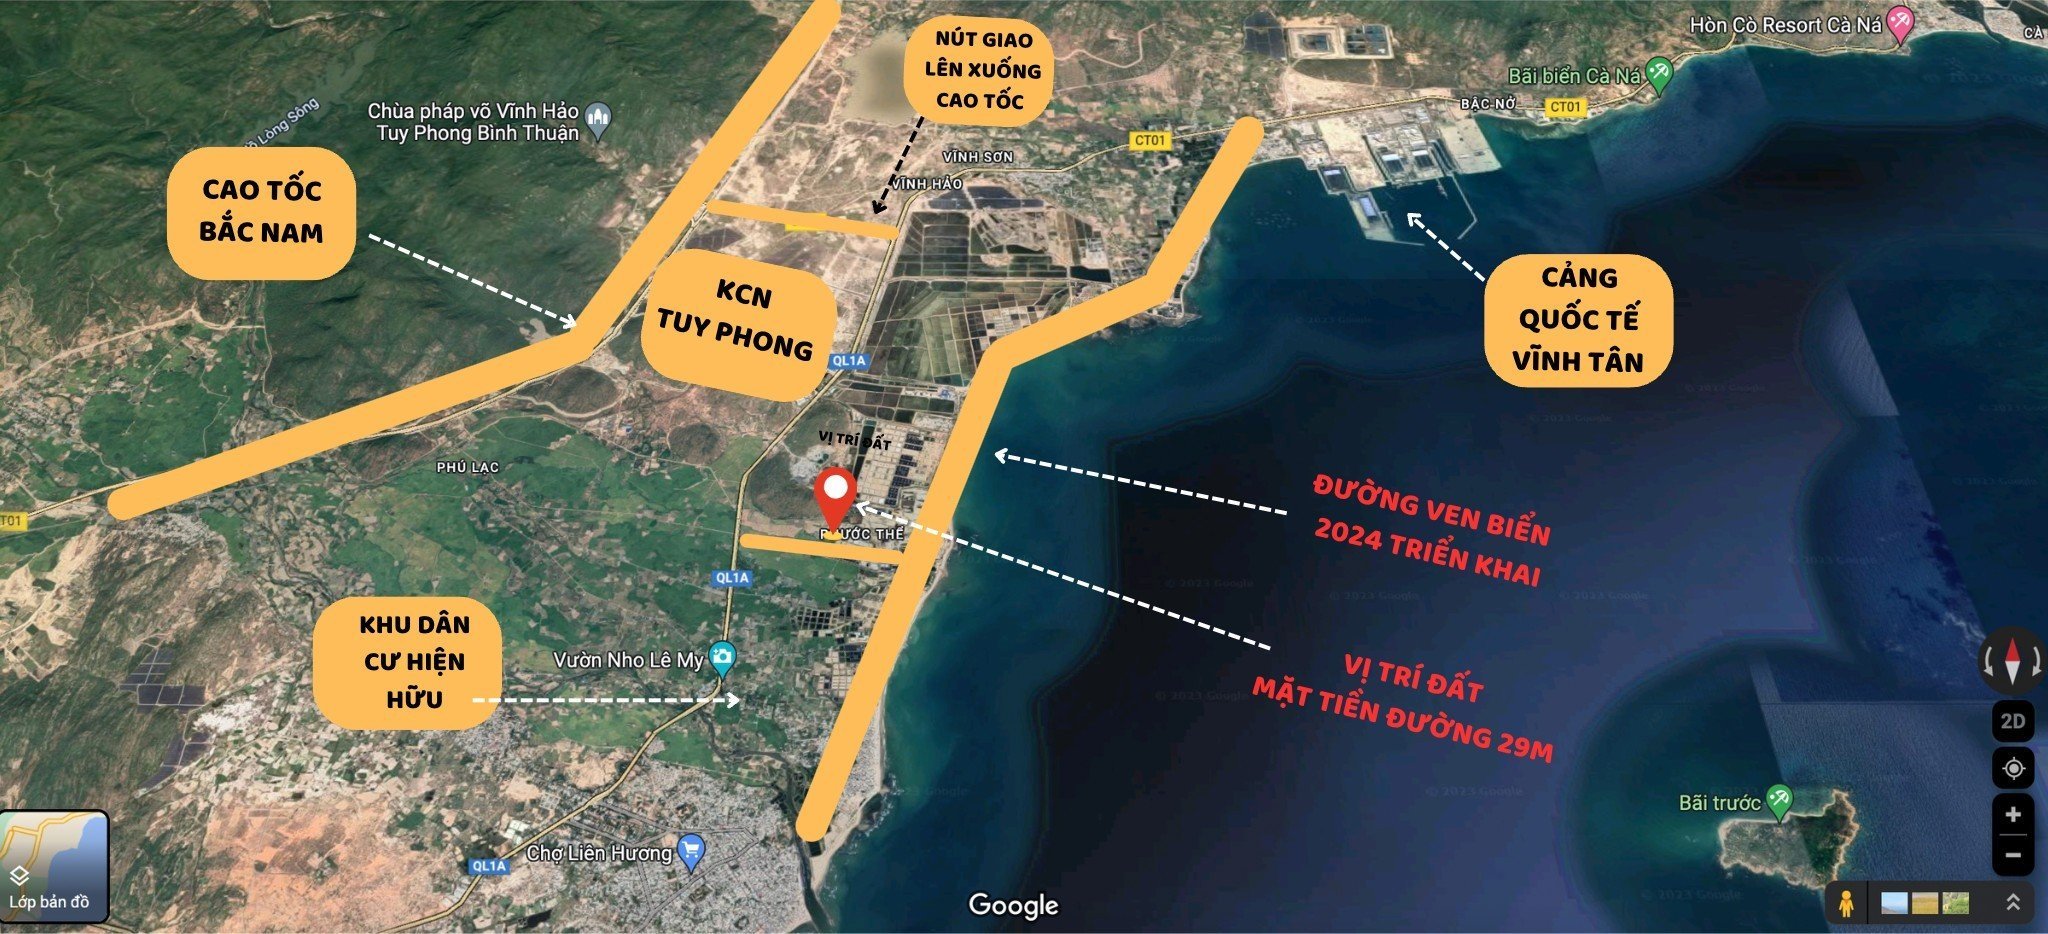 Ngỡ ngàng với siêu lợi nhuận khi sở hữu đất biển Bình Thuận - KDC Phước Thể